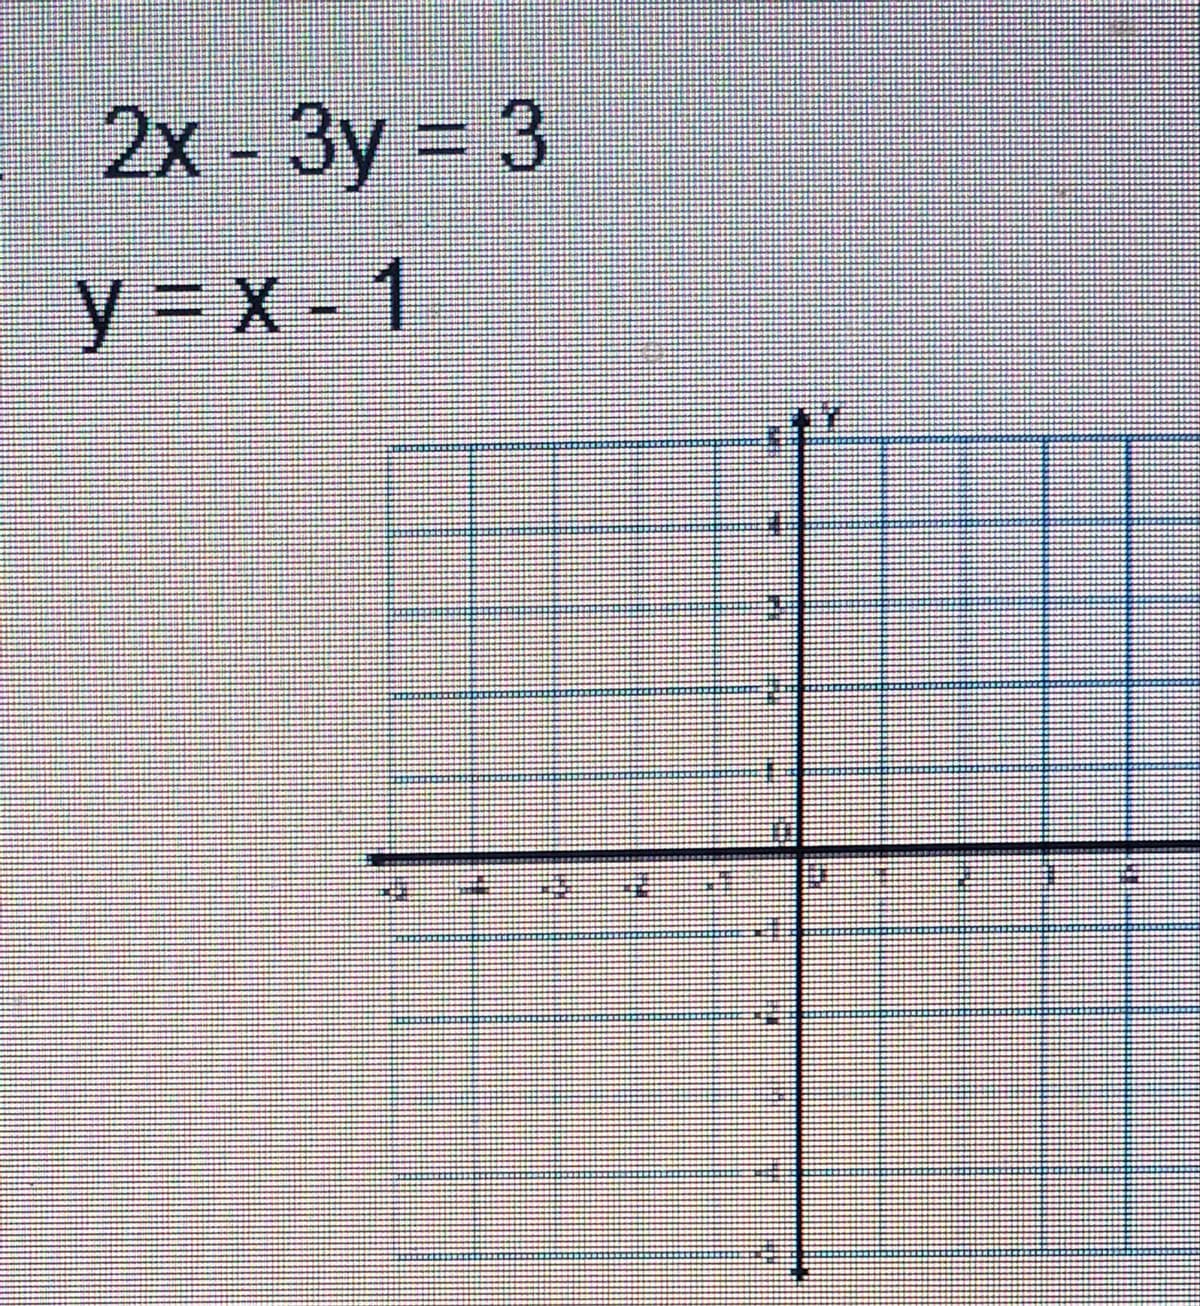 2x - 3y = 3
y=x-1